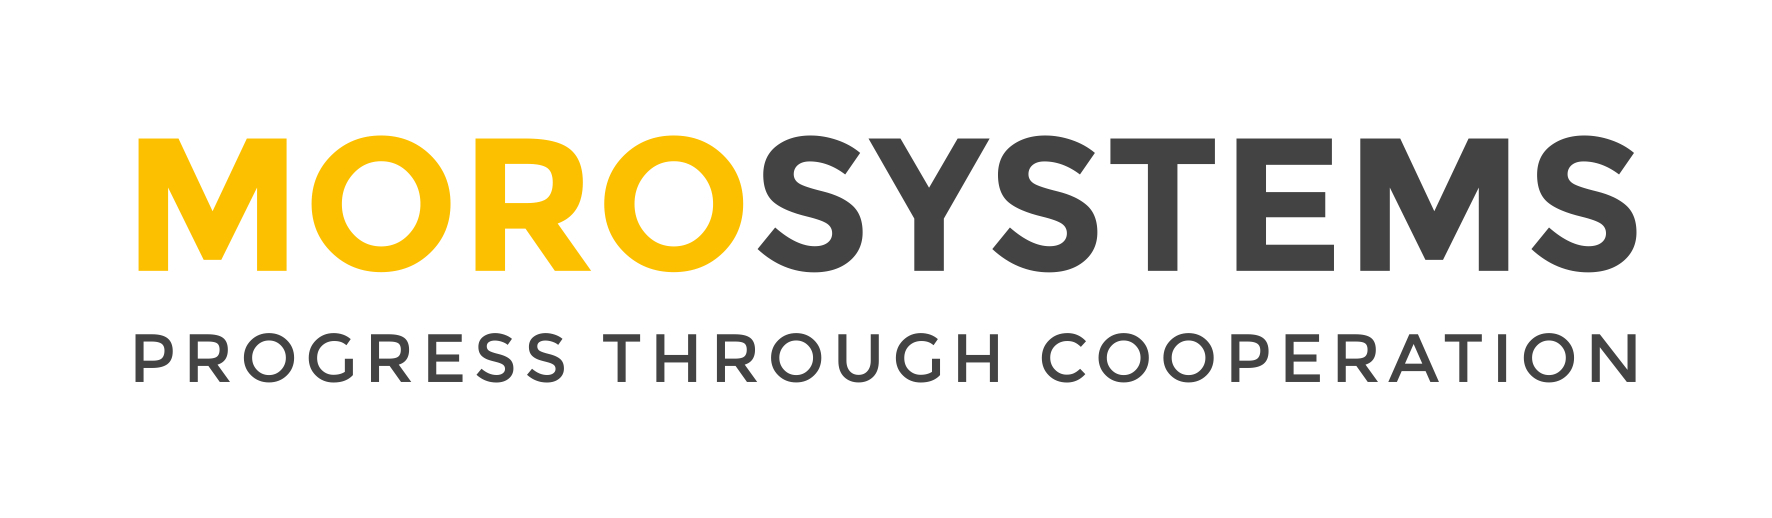 Moro Systems logo